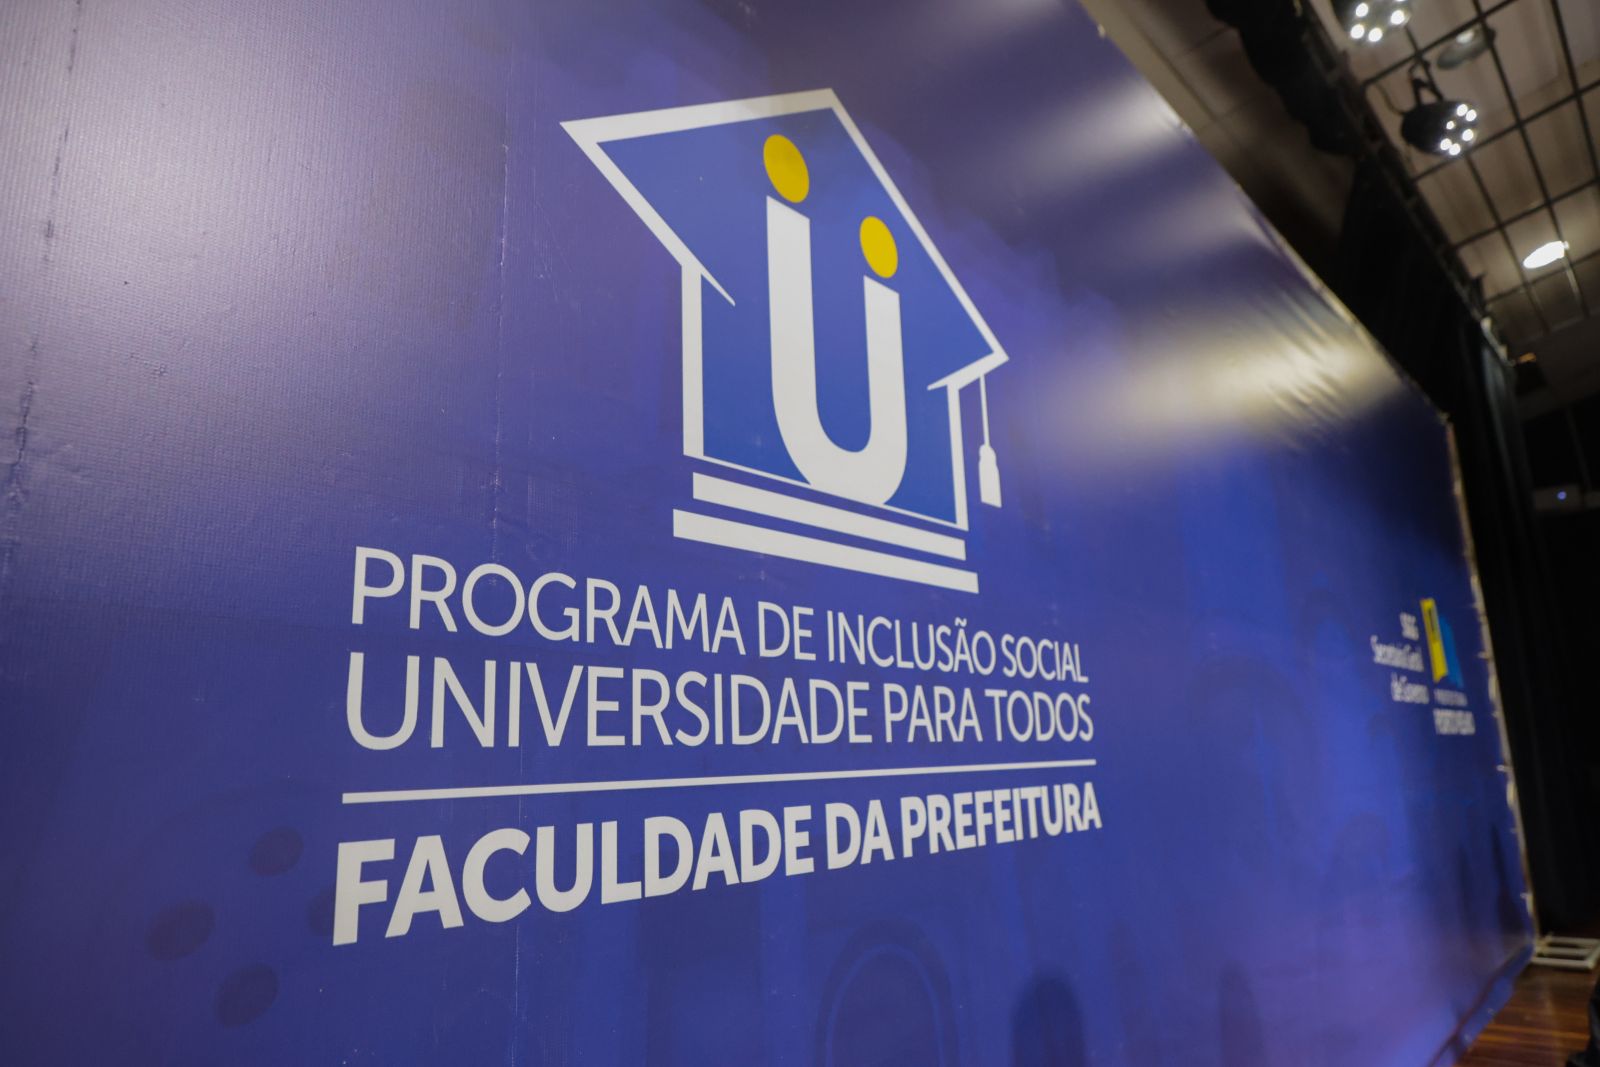 EDUCAÇÃO SUPERIOR: Faculdade da Prefeitura oferta 415 vagas; inscrições vão até dia 21 de janeiro